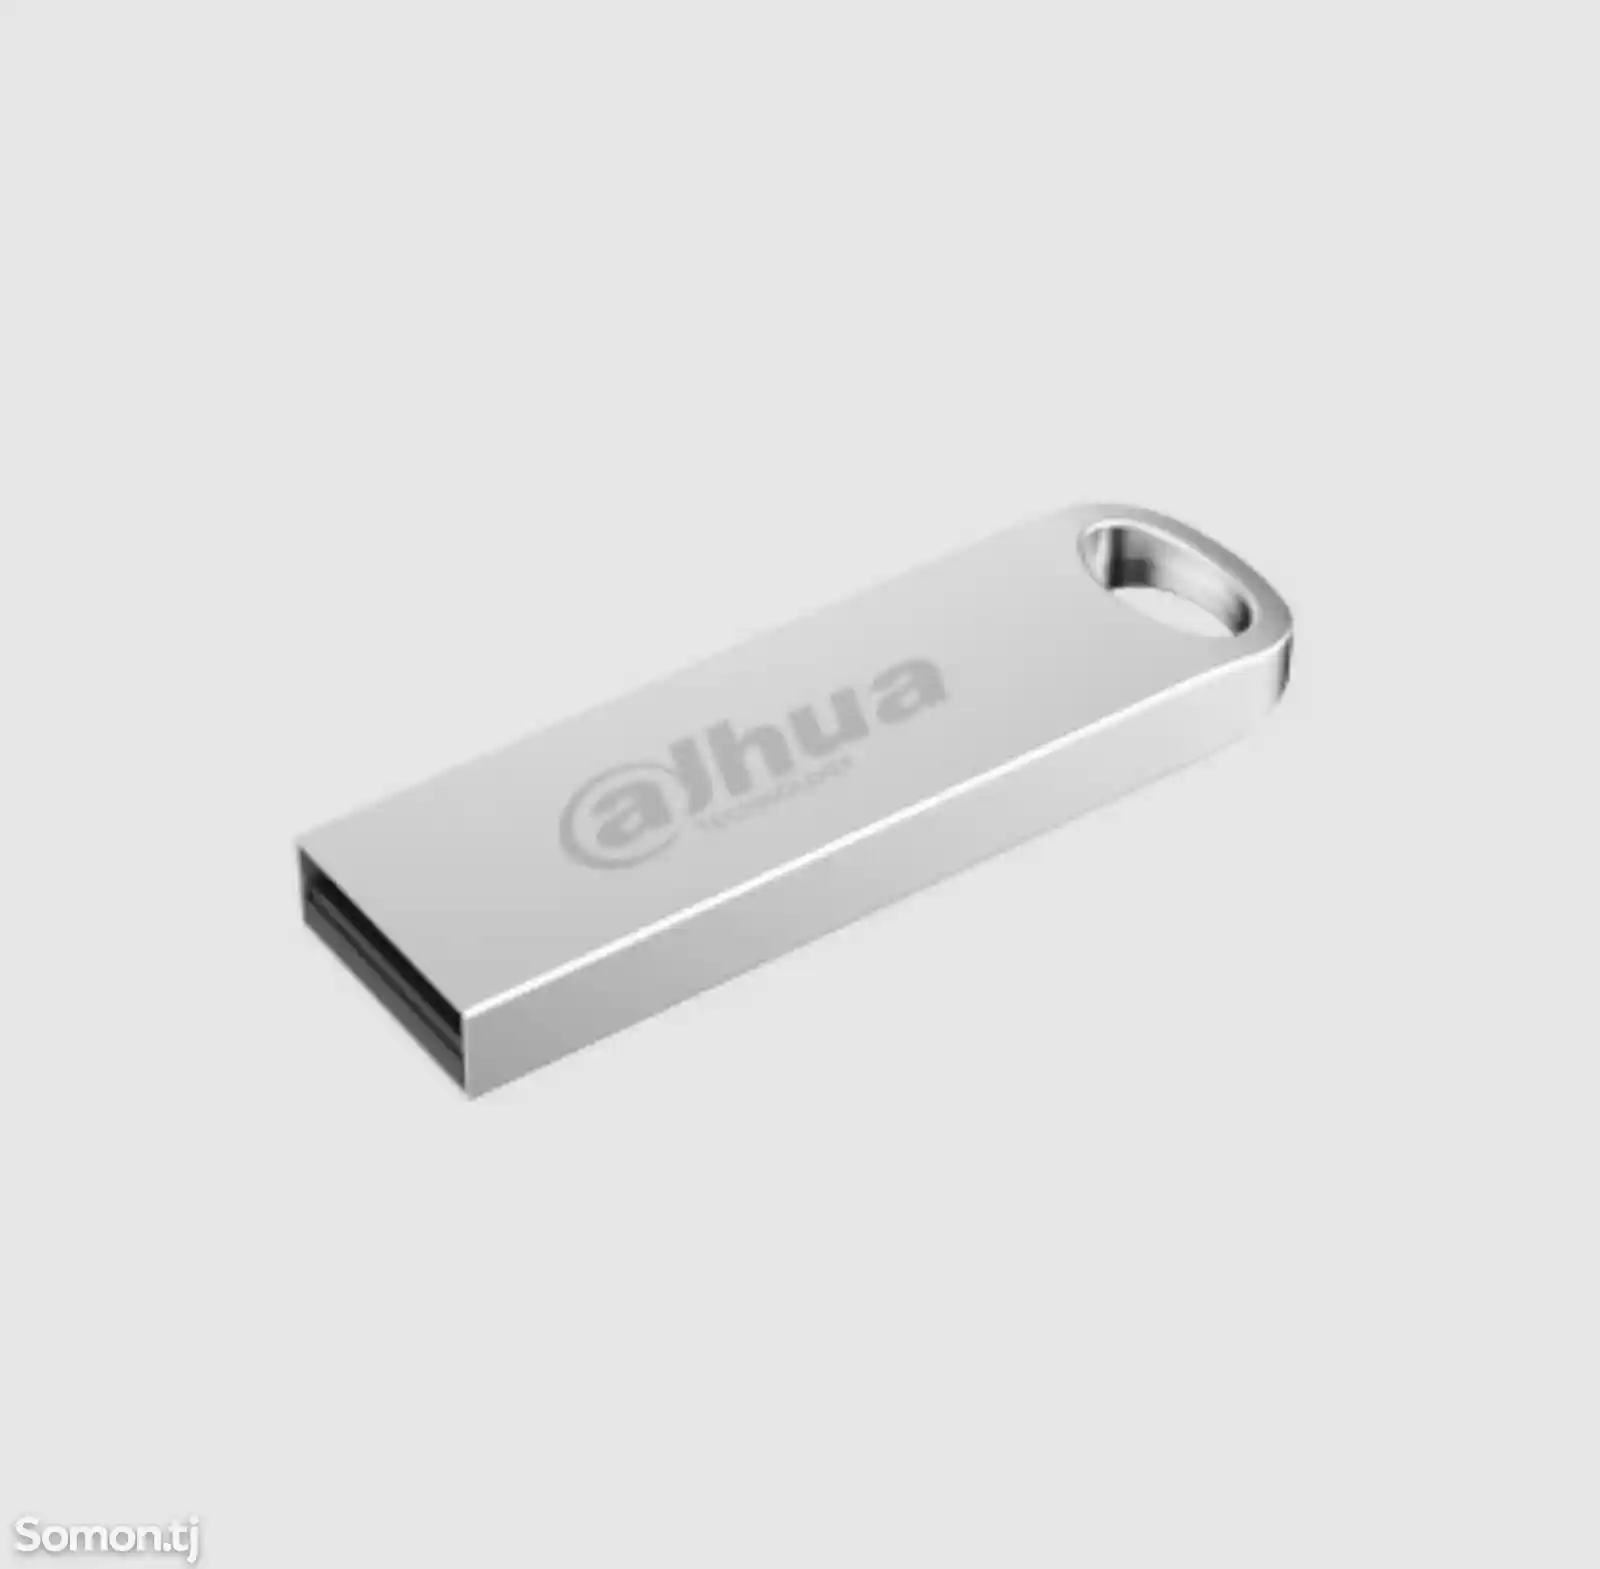 Dahua Usb Flash Drive 32GB-3